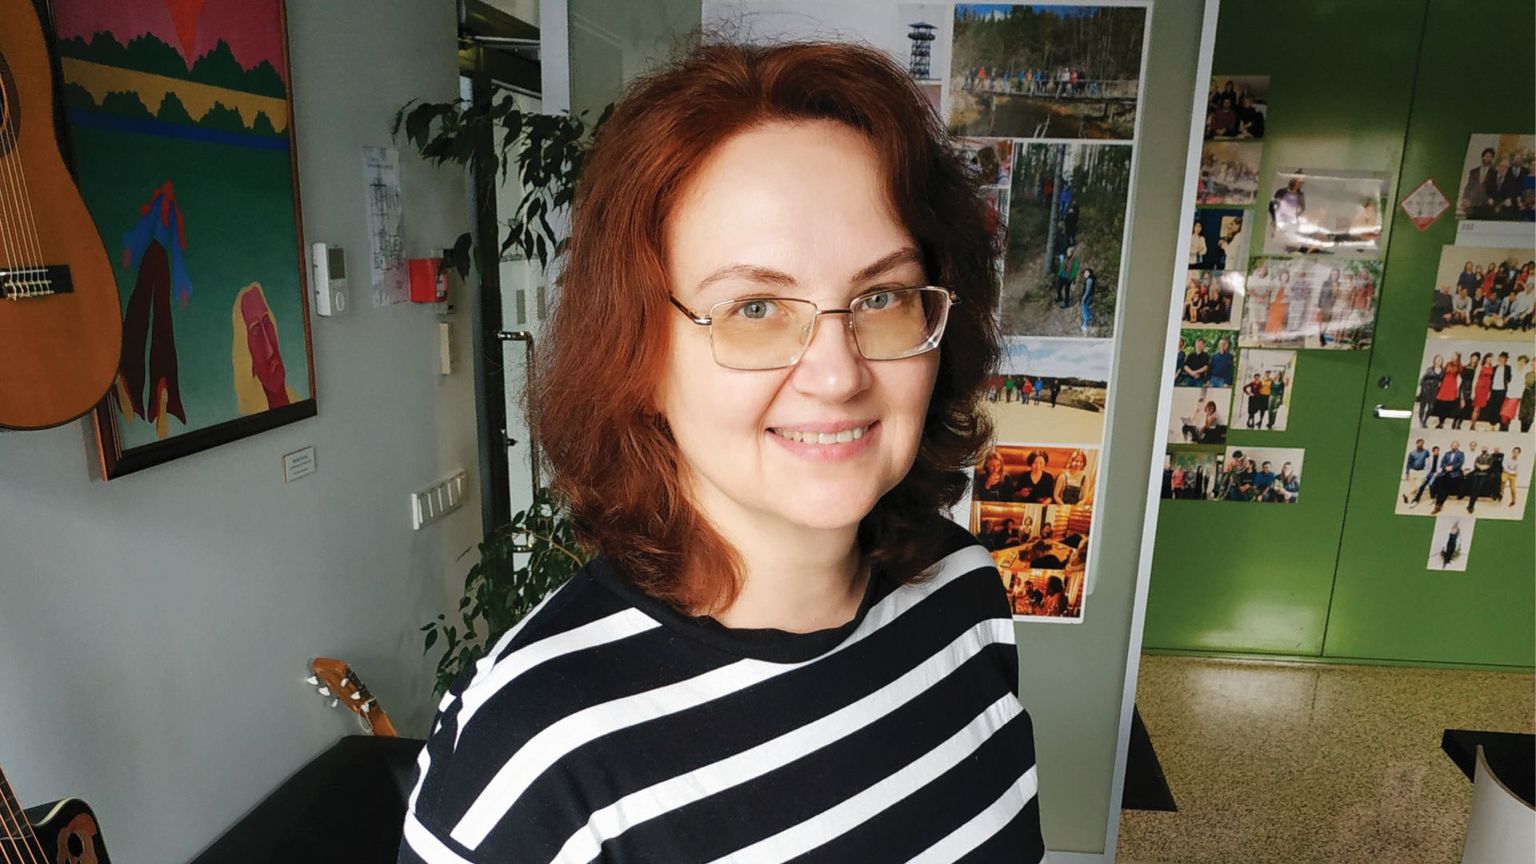 Olga Utevska uurimisfookus on suunatud sellele, kuidas elasid inimesed Ukraina aladel rauaajal.